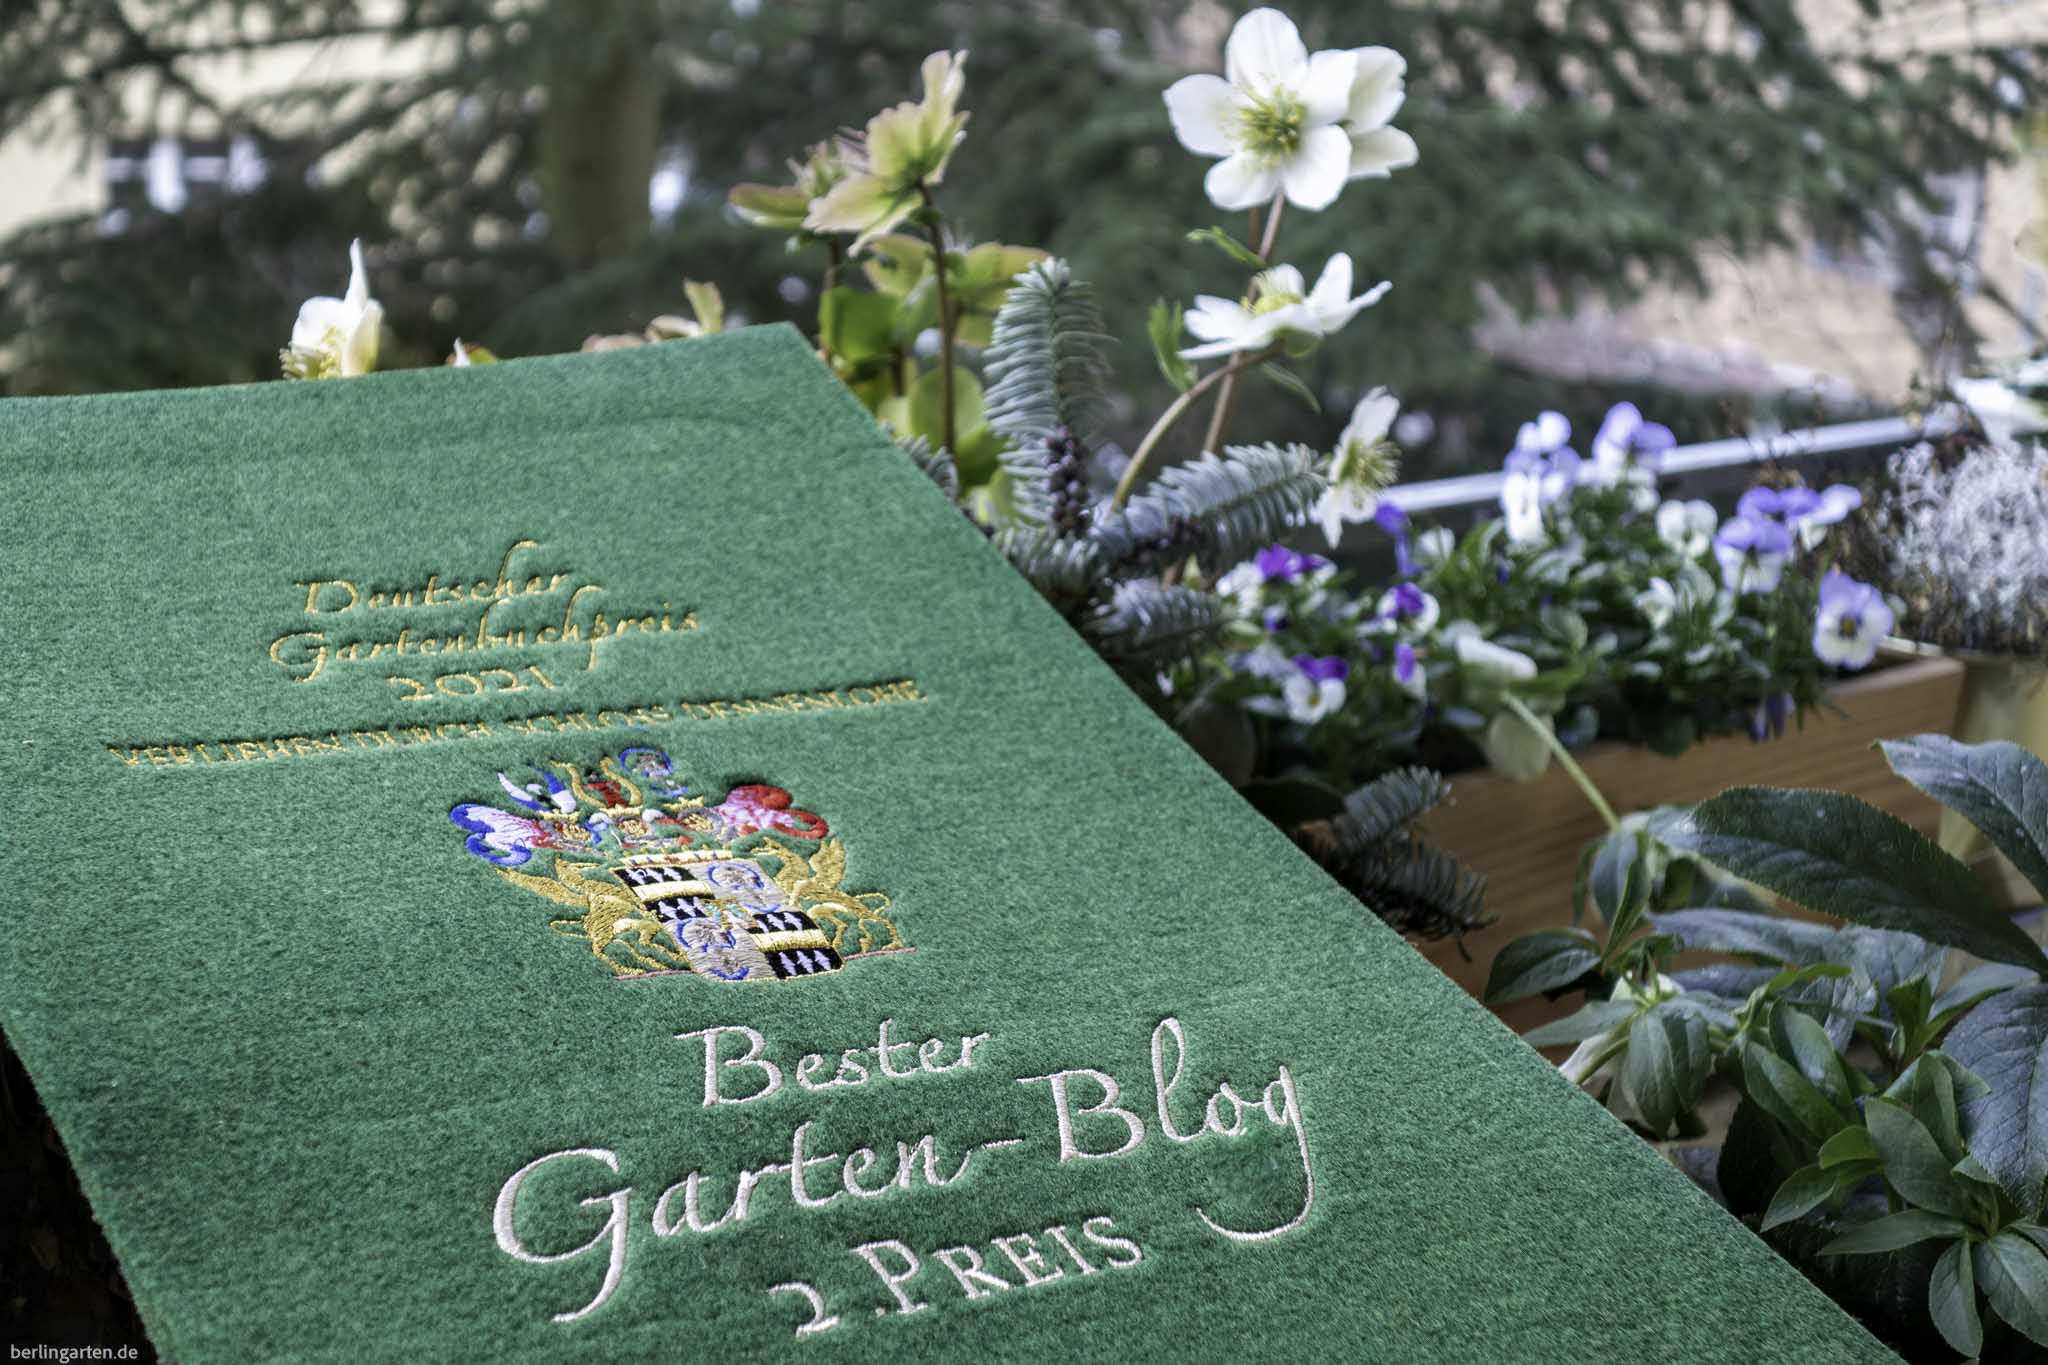 Deutscher Gartenbuchpreis: berlingarten in der Kategorie Bester Gartenblog auf Platz 2